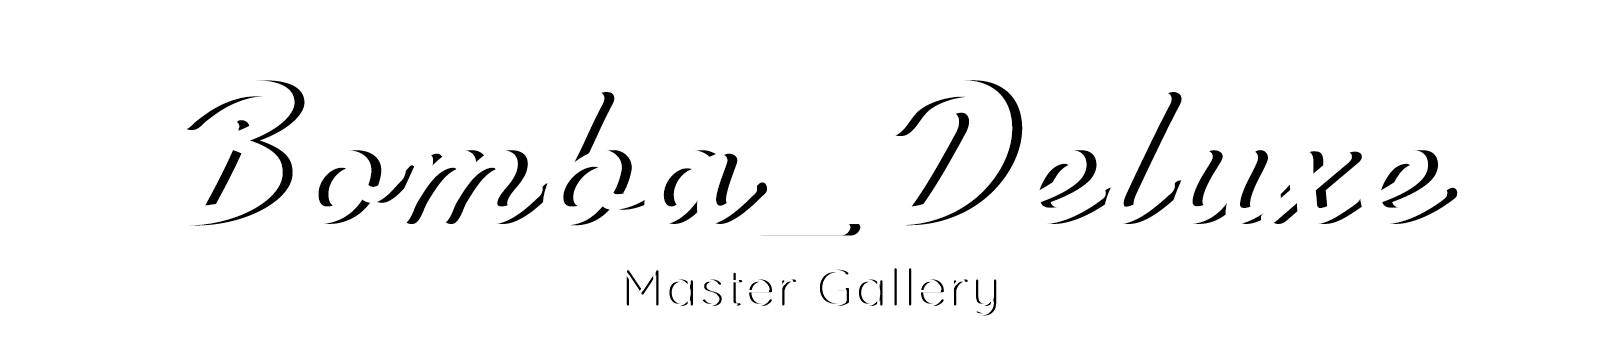 Bomba_Deluxe Master Gallery